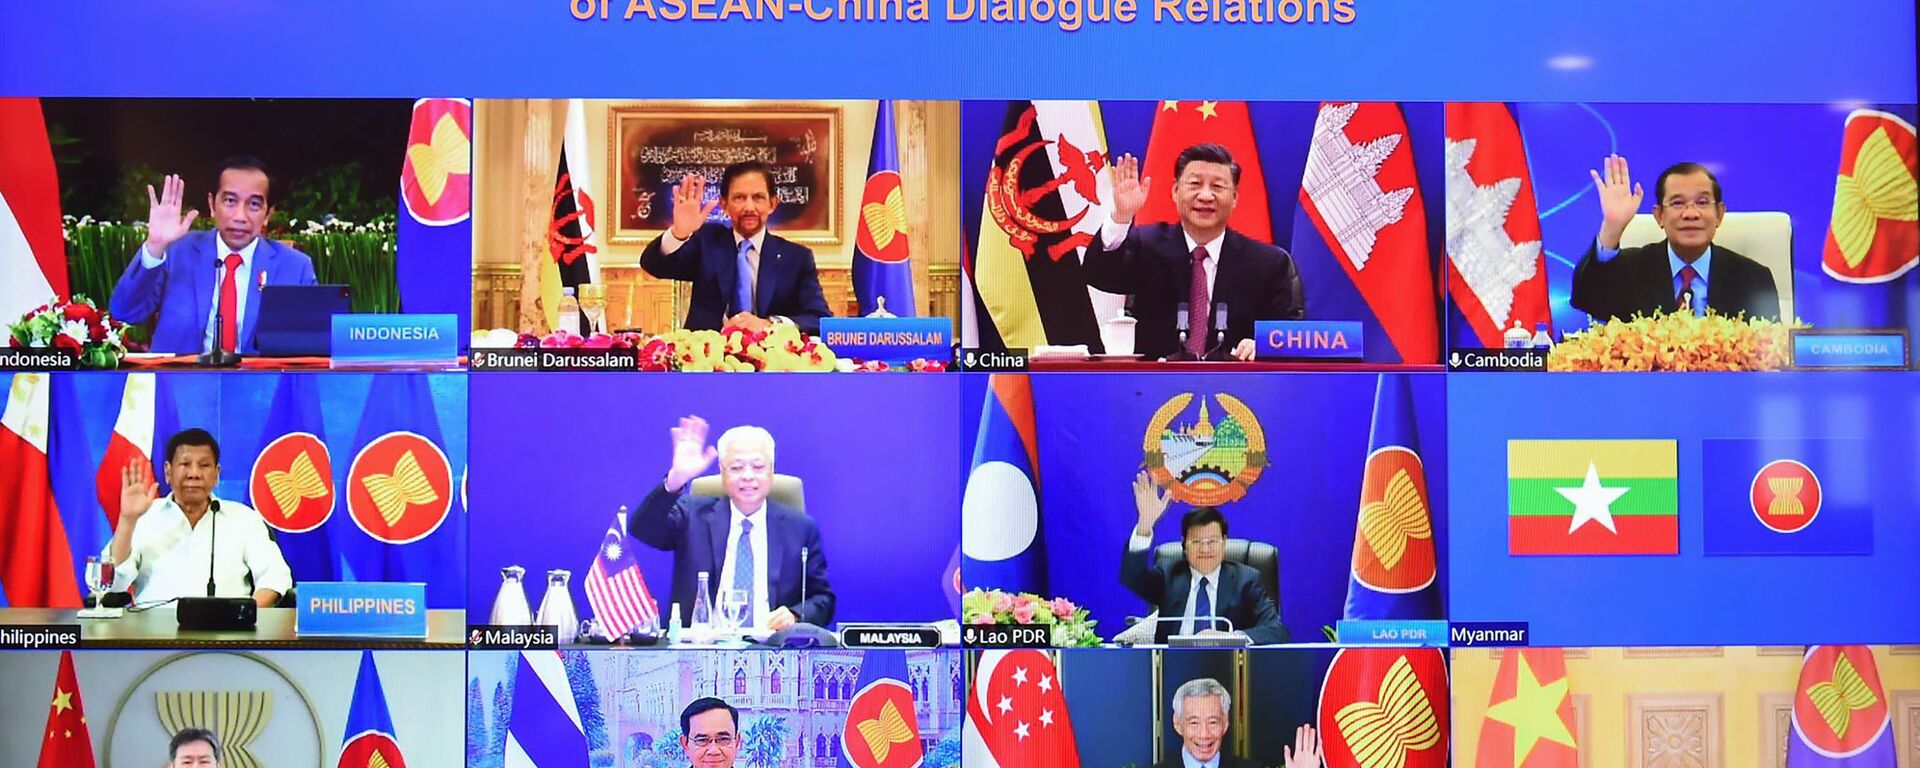 Các nhà lãnh đạo ASEAN và Chủ tịch Trung Quốc Tập Cận Bình tại Cuộc họp trực tuyến Cấp cao ASEAN-Trung Quốc ở Kuala Lumpur, Malaysia - Sputnik Việt Nam, 1920, 22.11.2021